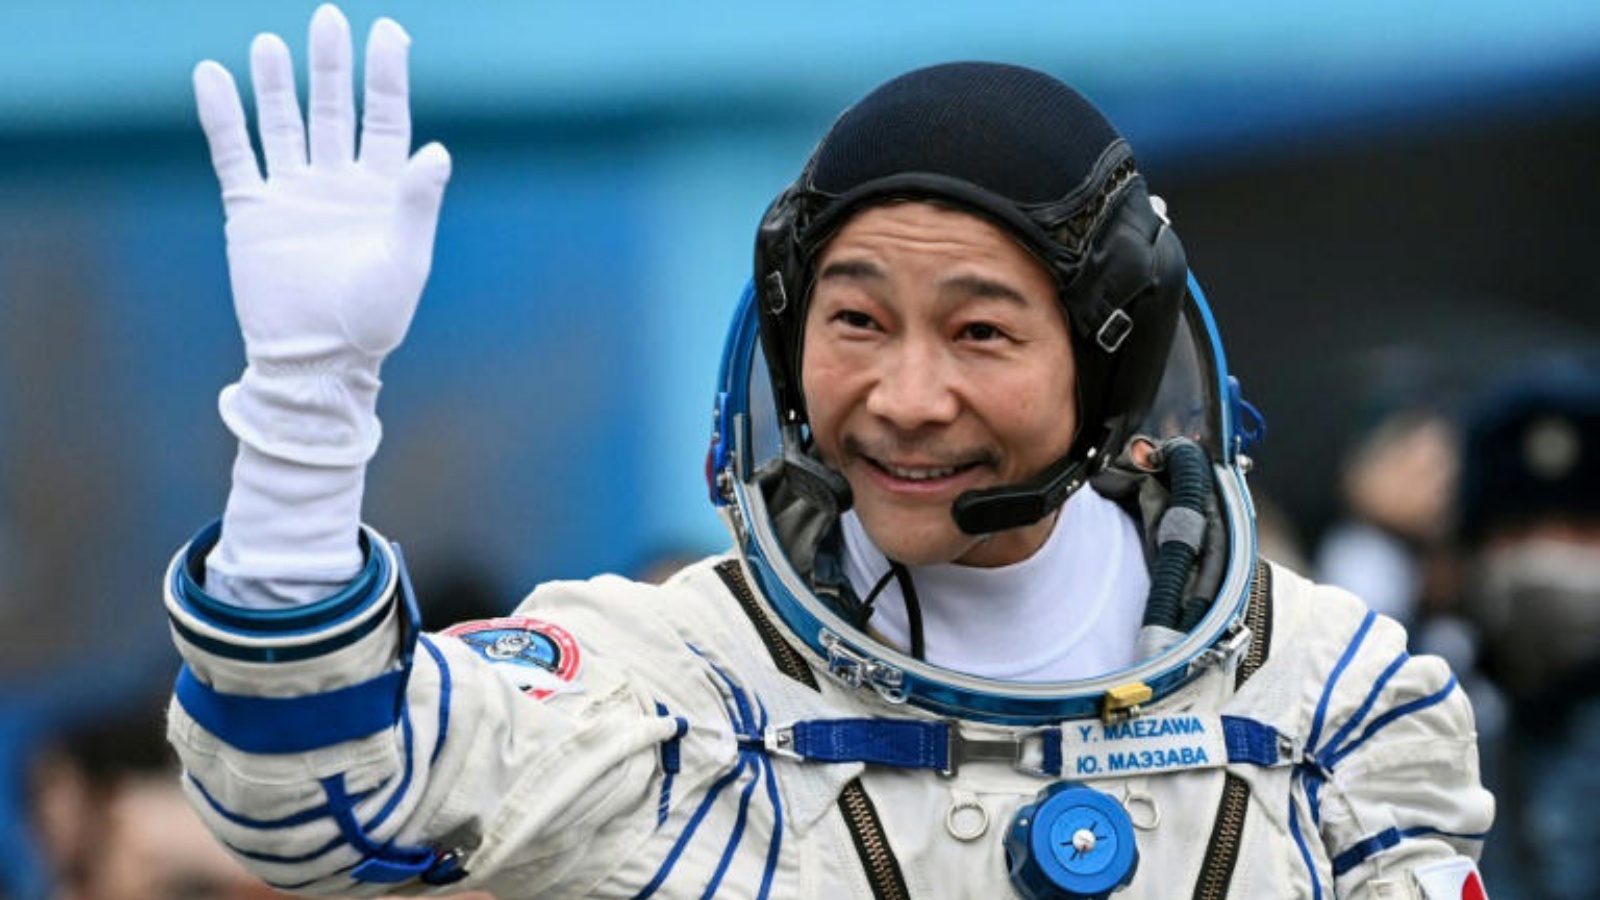 الملياردير الياباني يوساكو مايزاوا يلقي التحية في 8 ديسمبر 2021 في بايكونور في كازاخستان قبل انطلاقه في رحلة سياحية إلى الفضاء الخارجي ليصل إلى محطة الفضاء الدولية